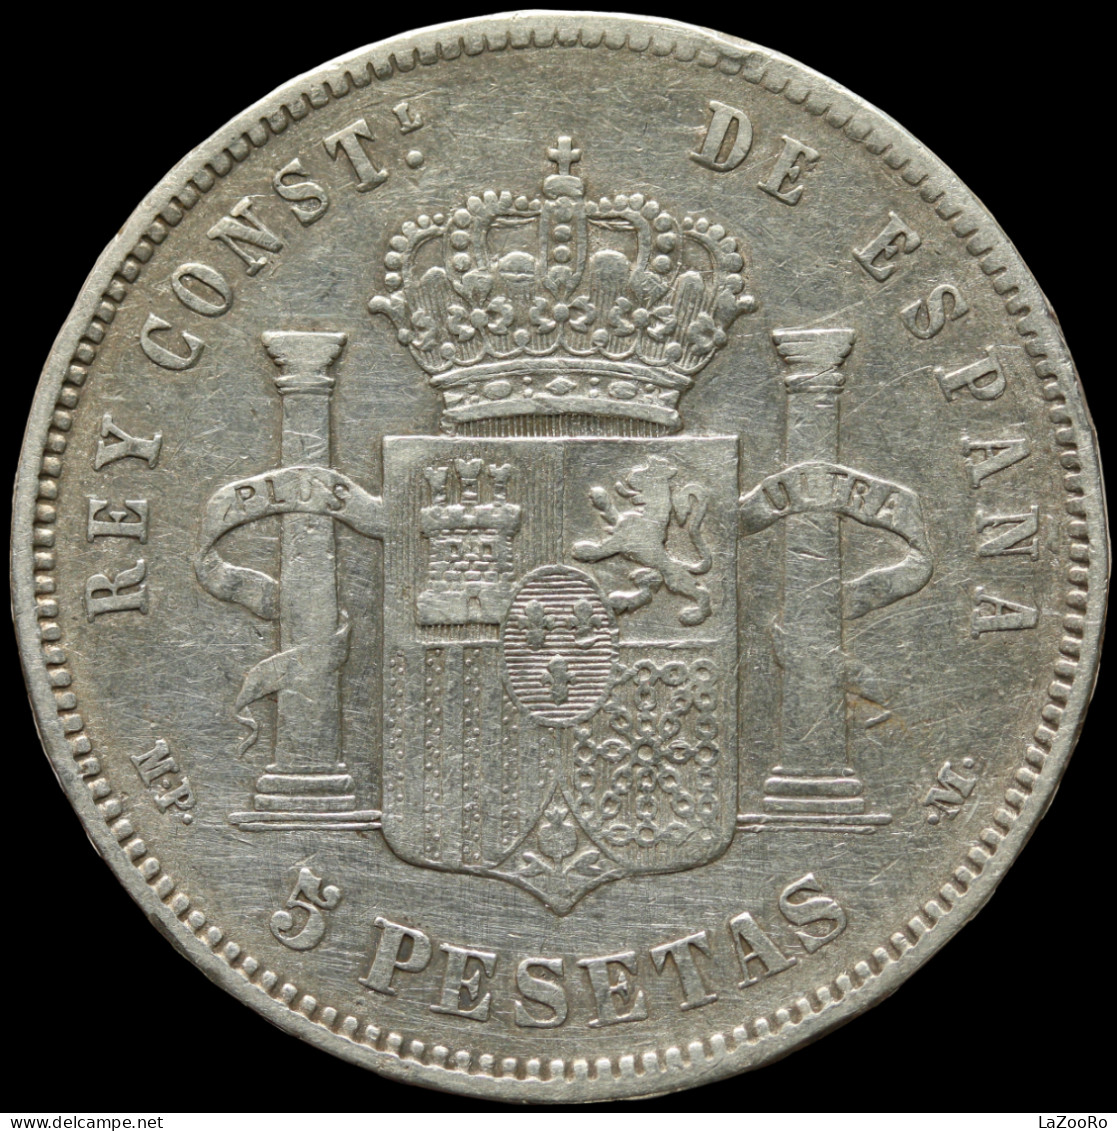 LaZooRo: Spain 5 Pesetas 1888 VF / XF - Silver - Primeras Acuñaciones